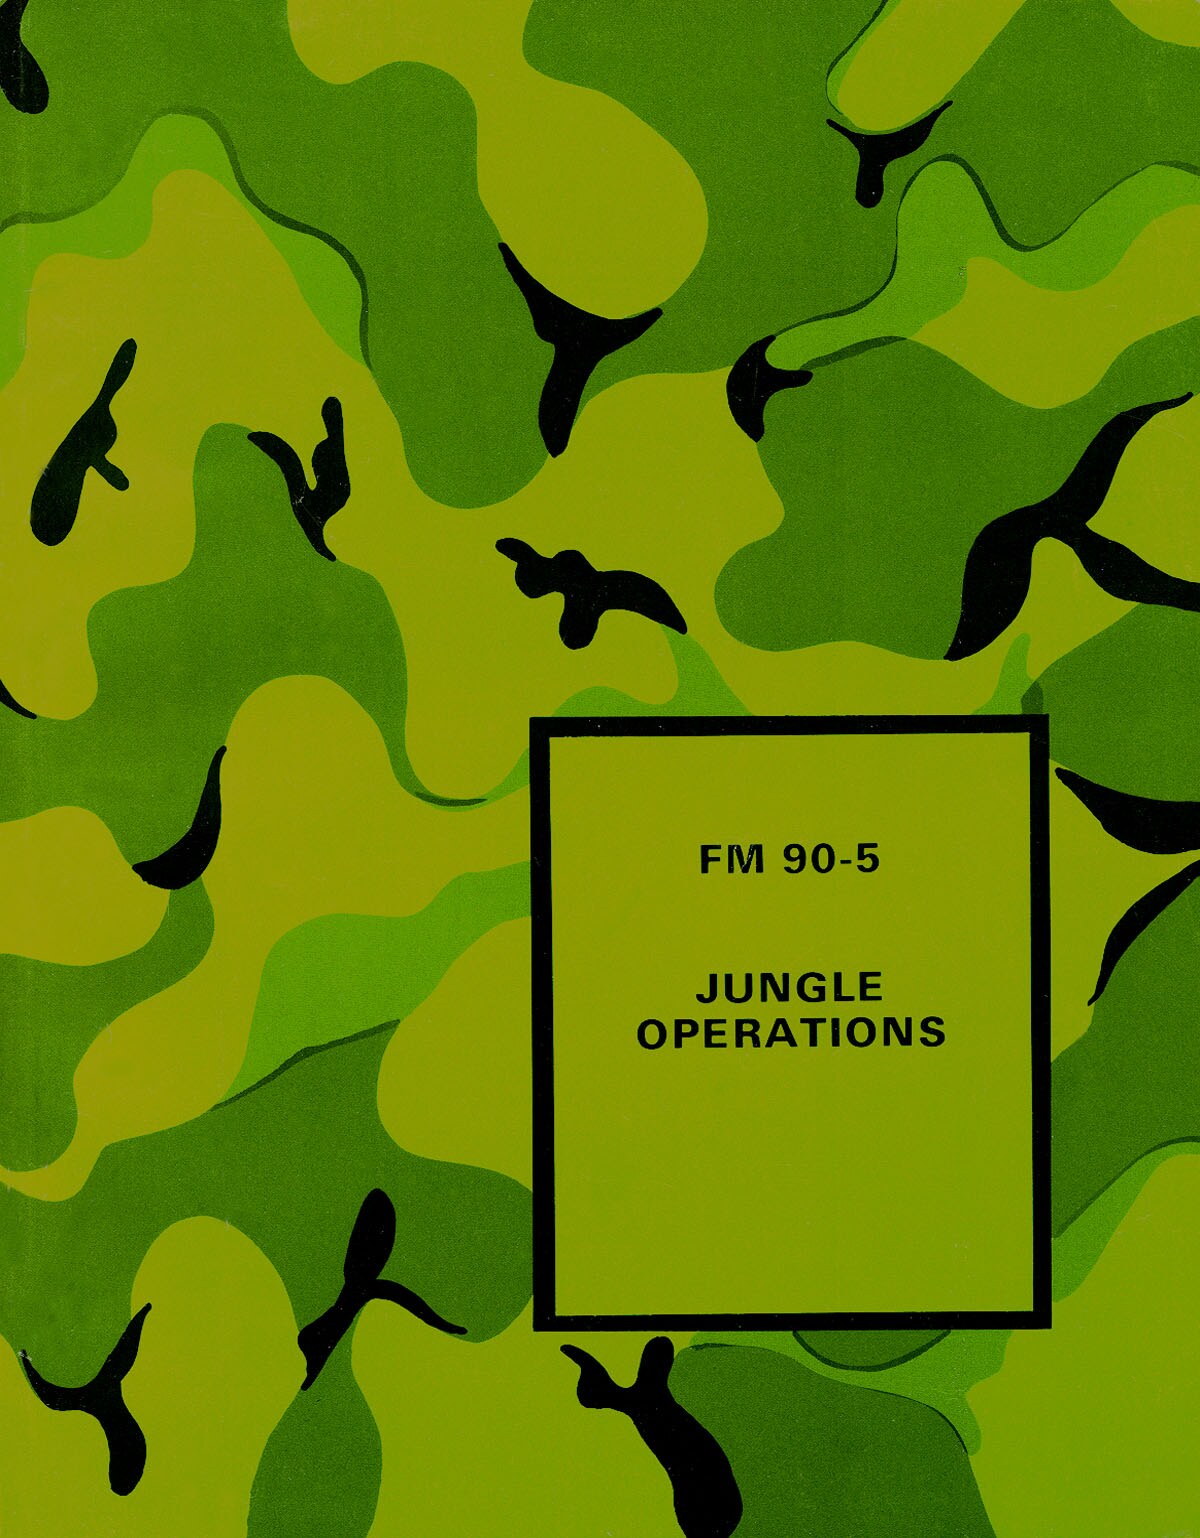 FM 90-5 Jungle Operations